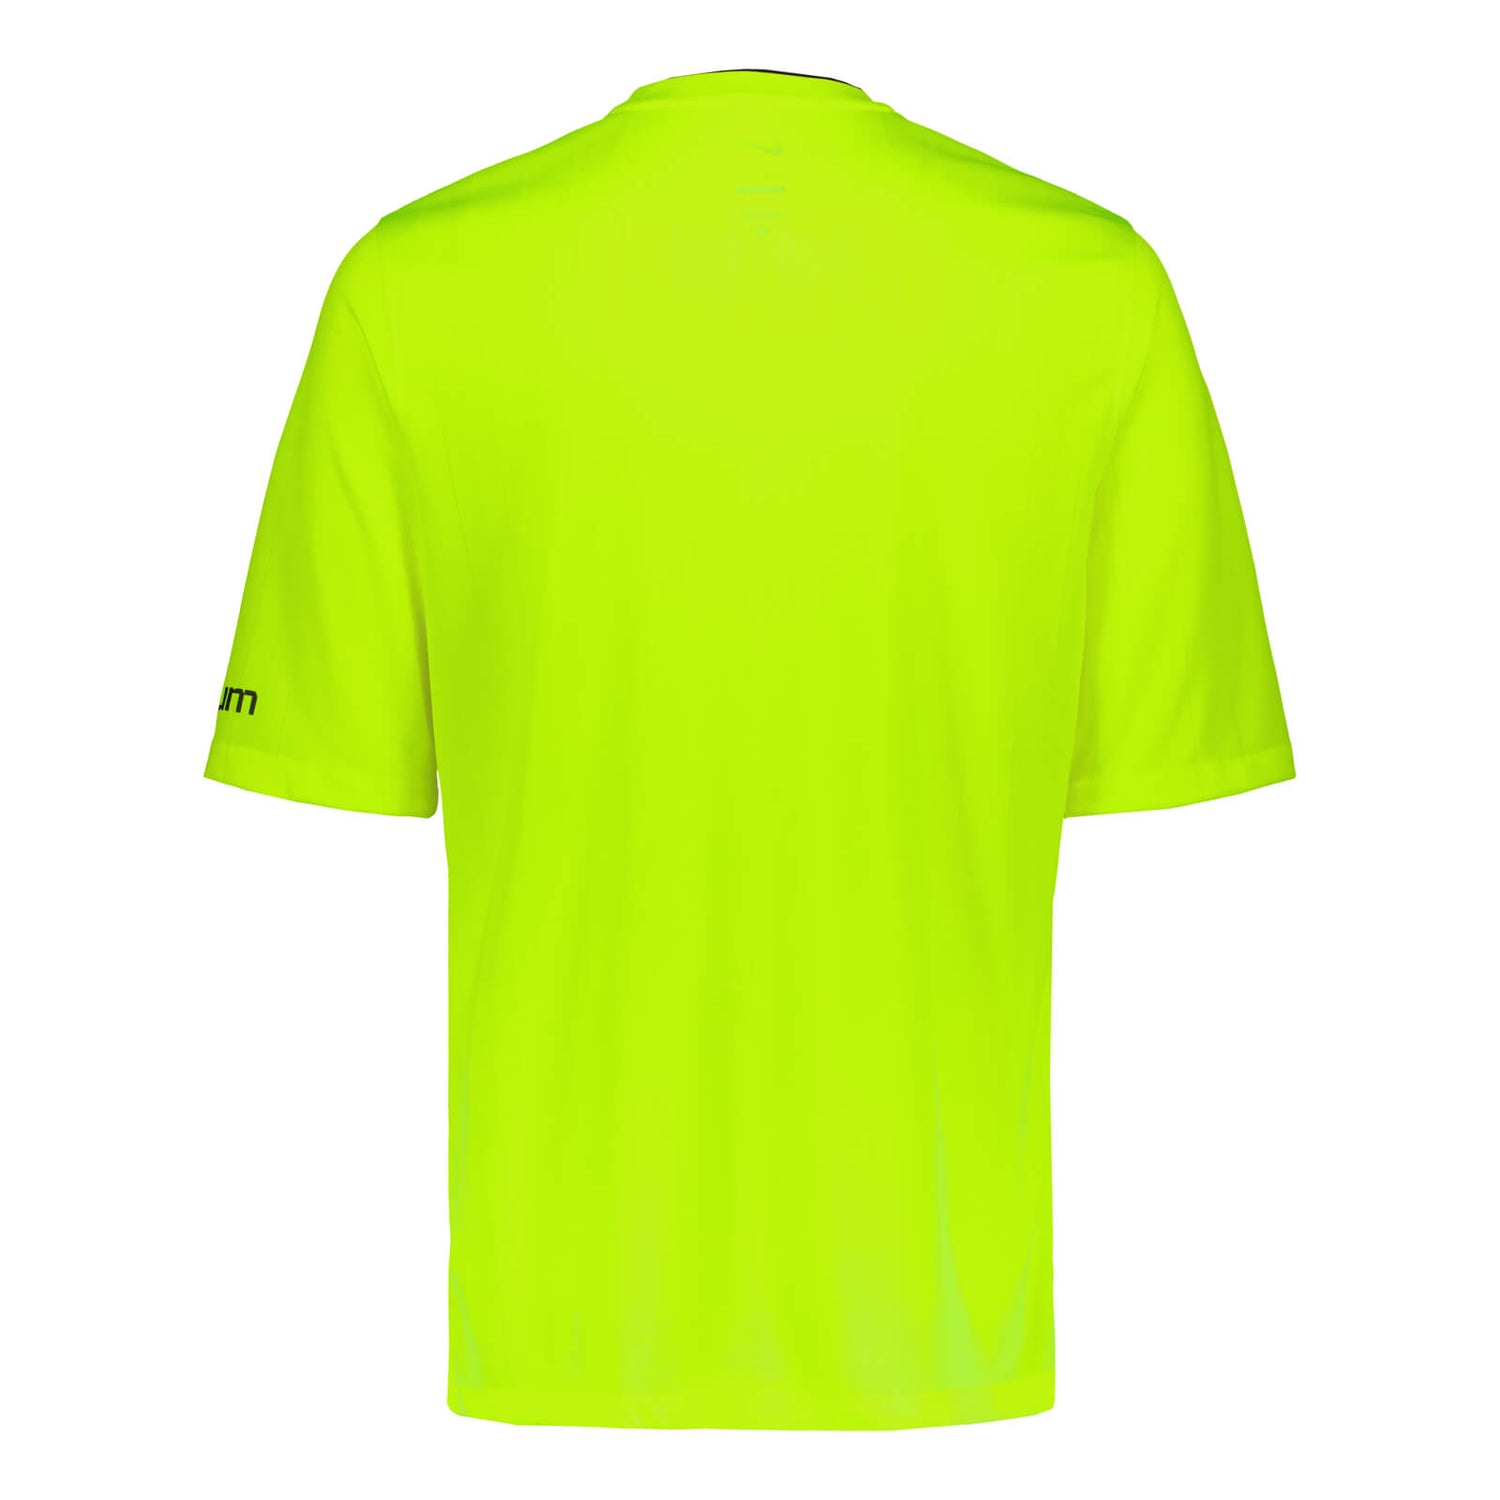 Erotuomarin virallinen lyhythihainen paita + erotuomarinmerkki, Keltainen